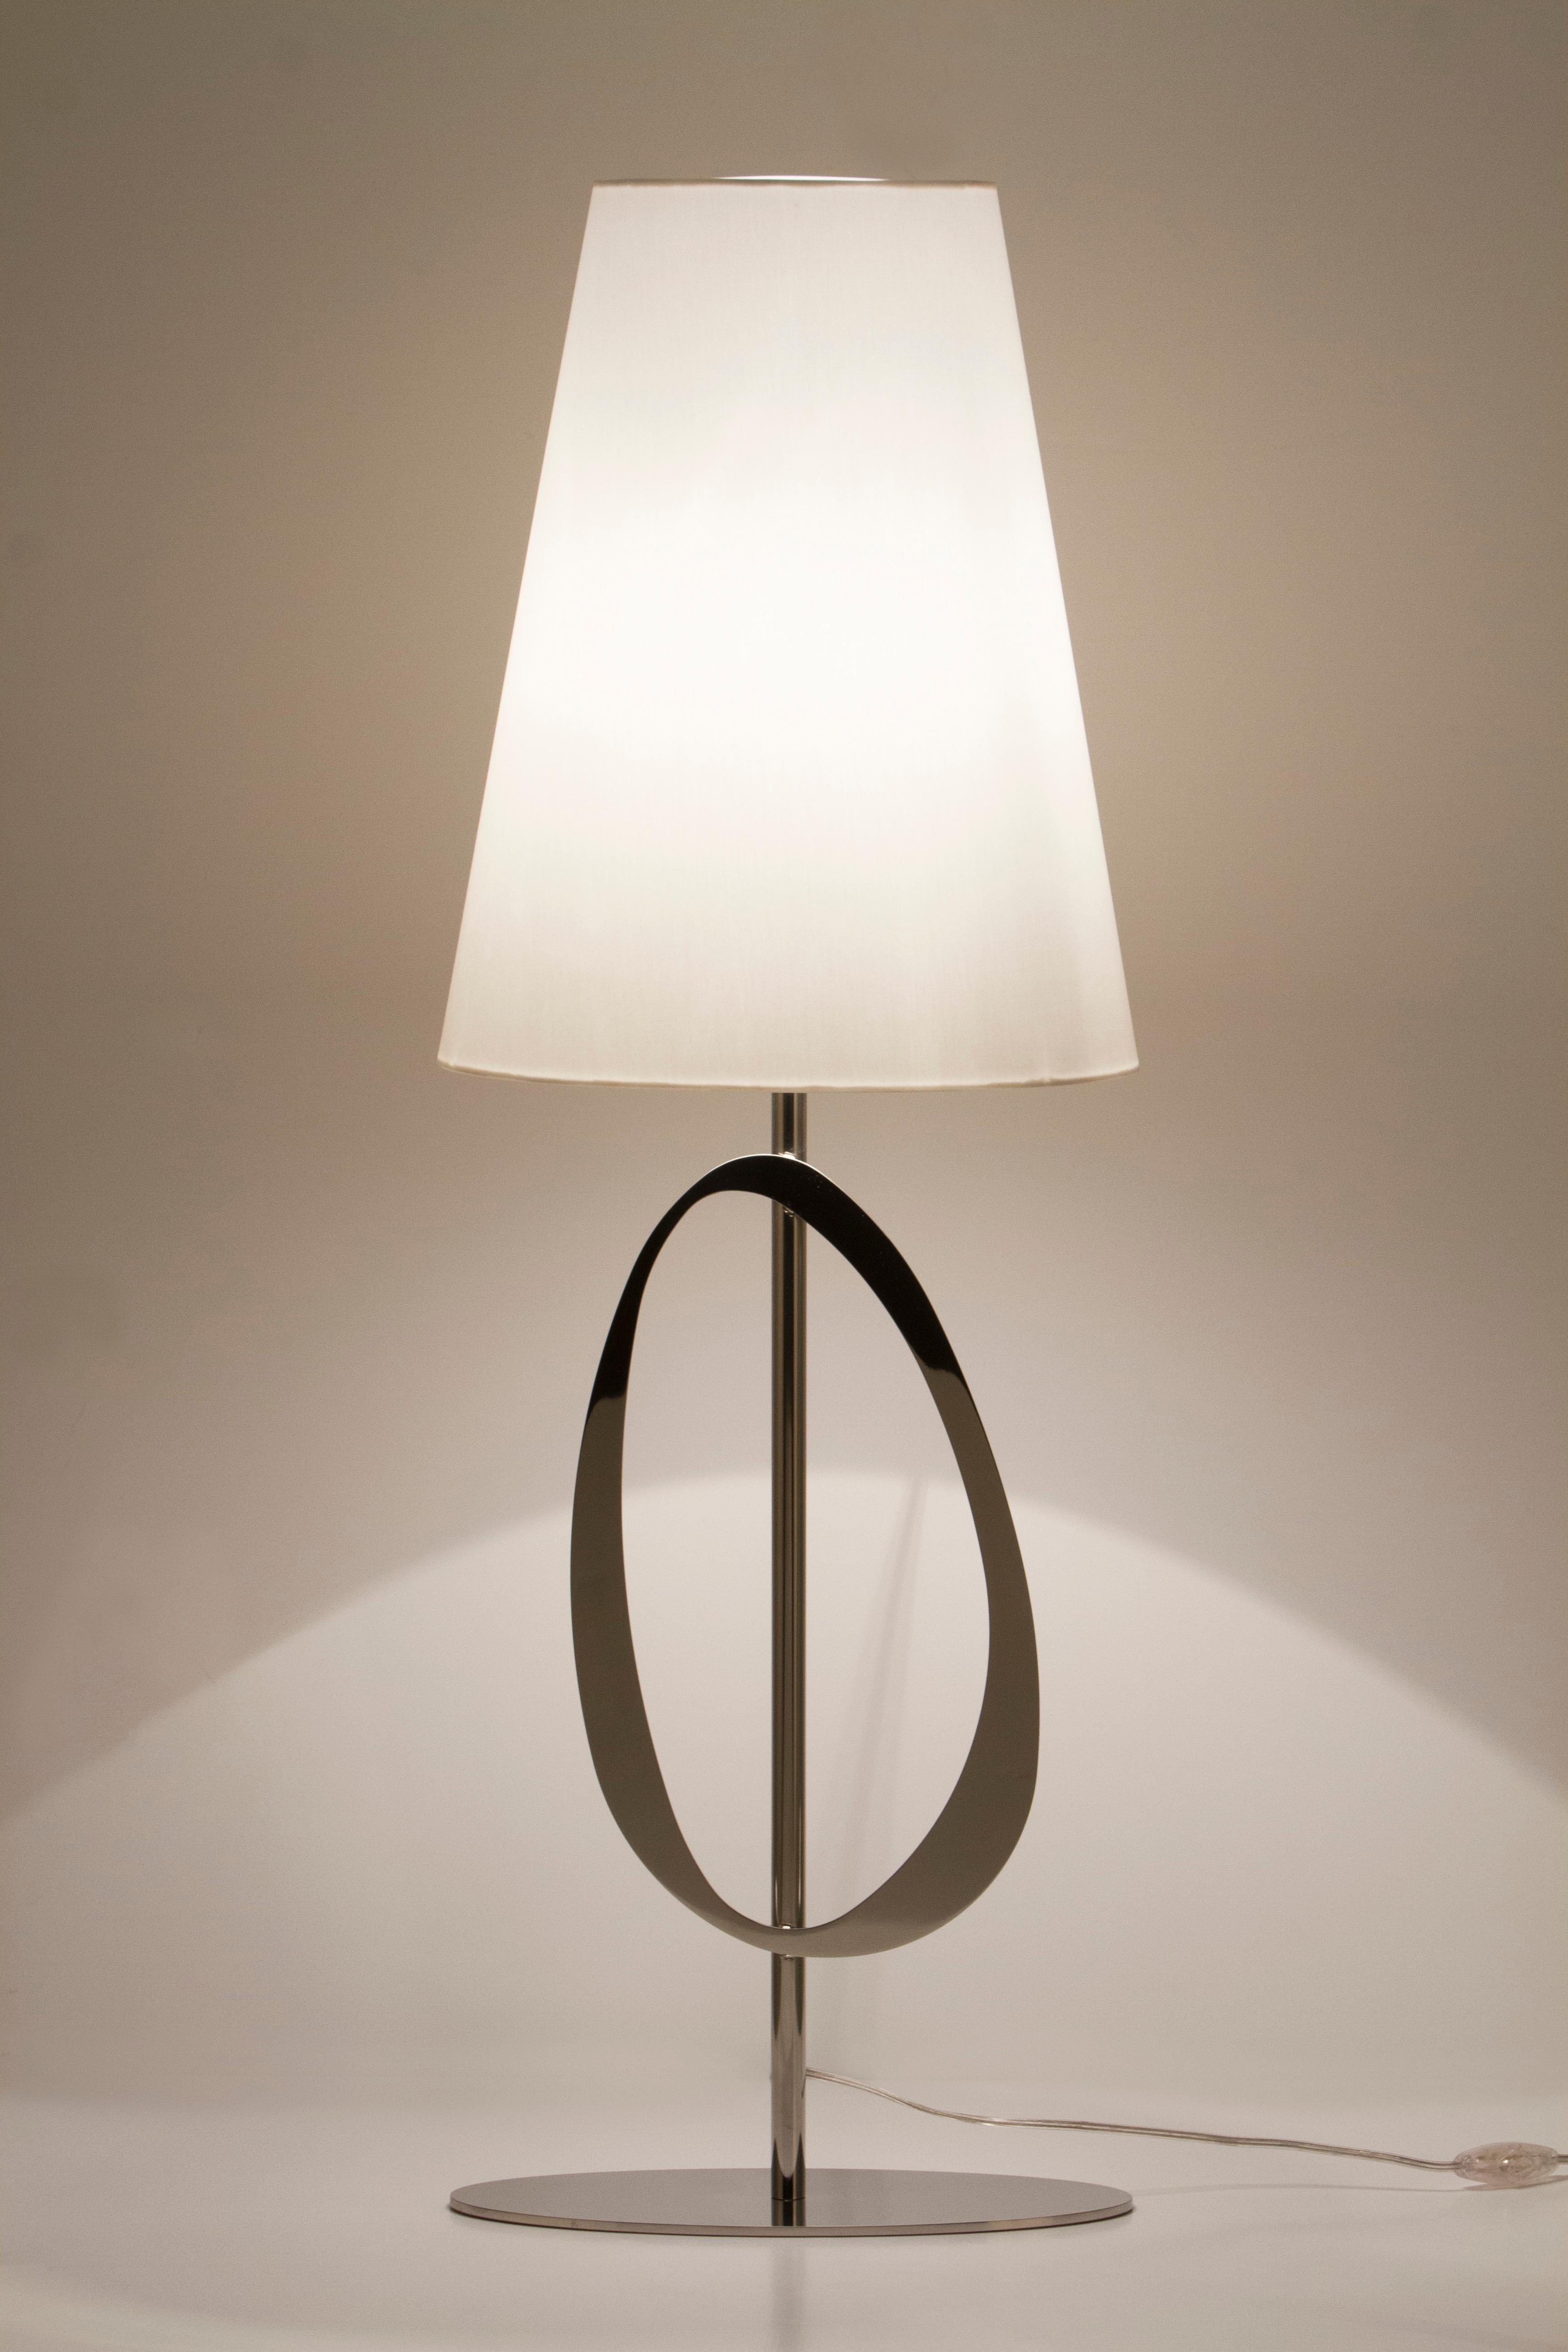 Lot de 2 lampes de table Robin, Collectional, fabriqué à la main au Portugal - Europe par GF Modern.

La luxueuse lampe de table moderne Robin crée une ambiance subliminale pour une vie extraordinaire. 
Le détail organique de l'acier inoxydable